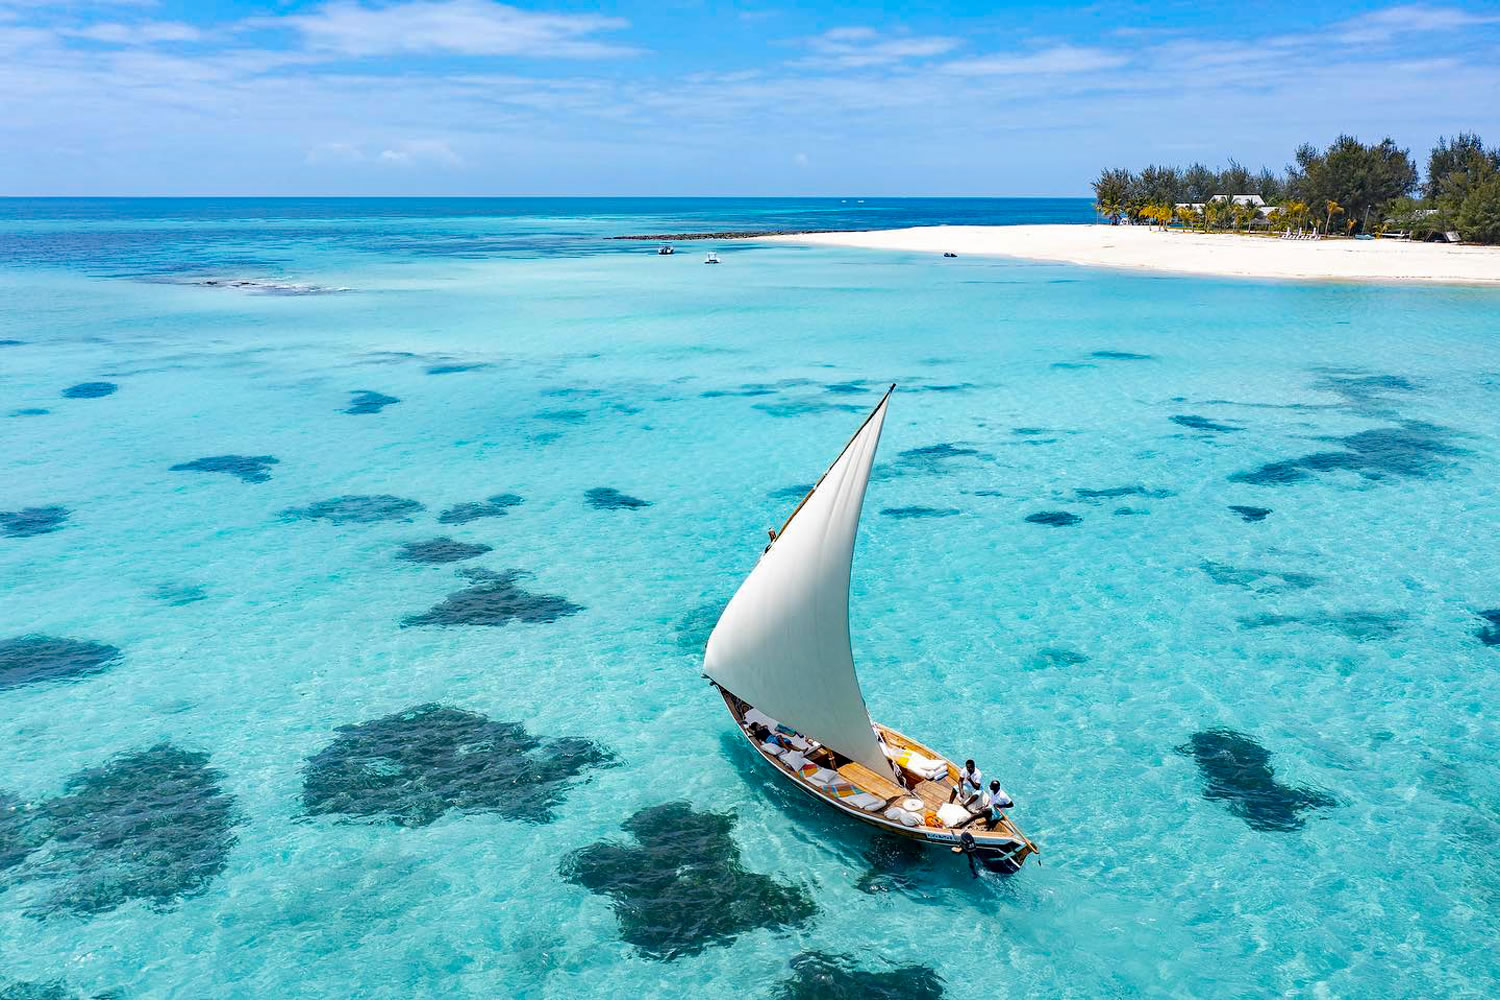 Zanzibar & The Indian Ocean